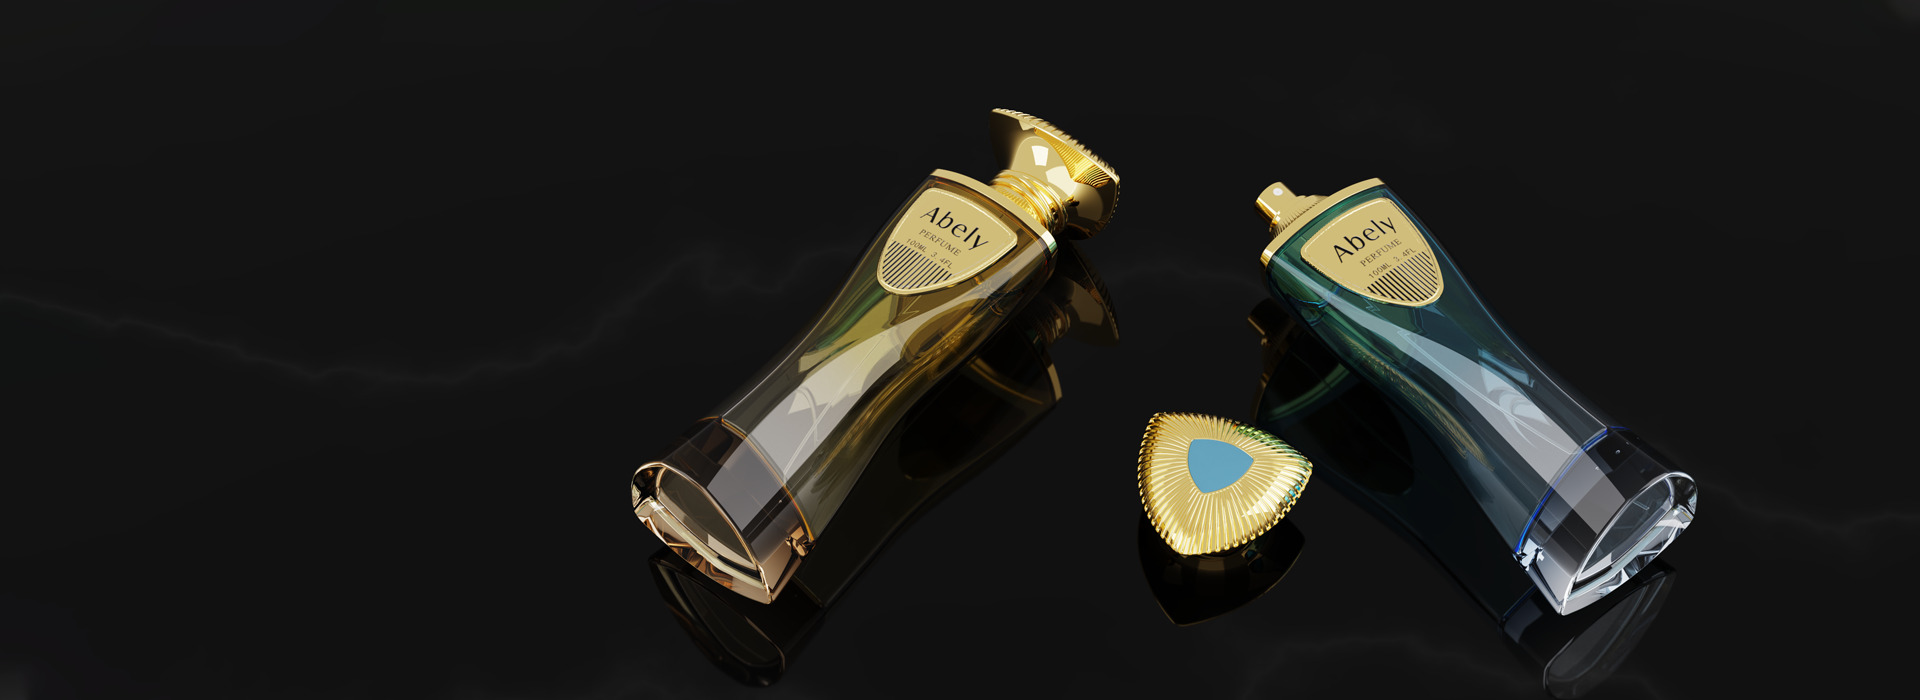 Custom Packaging&Perfume Bottle Box-Abely Perfume Packaging 